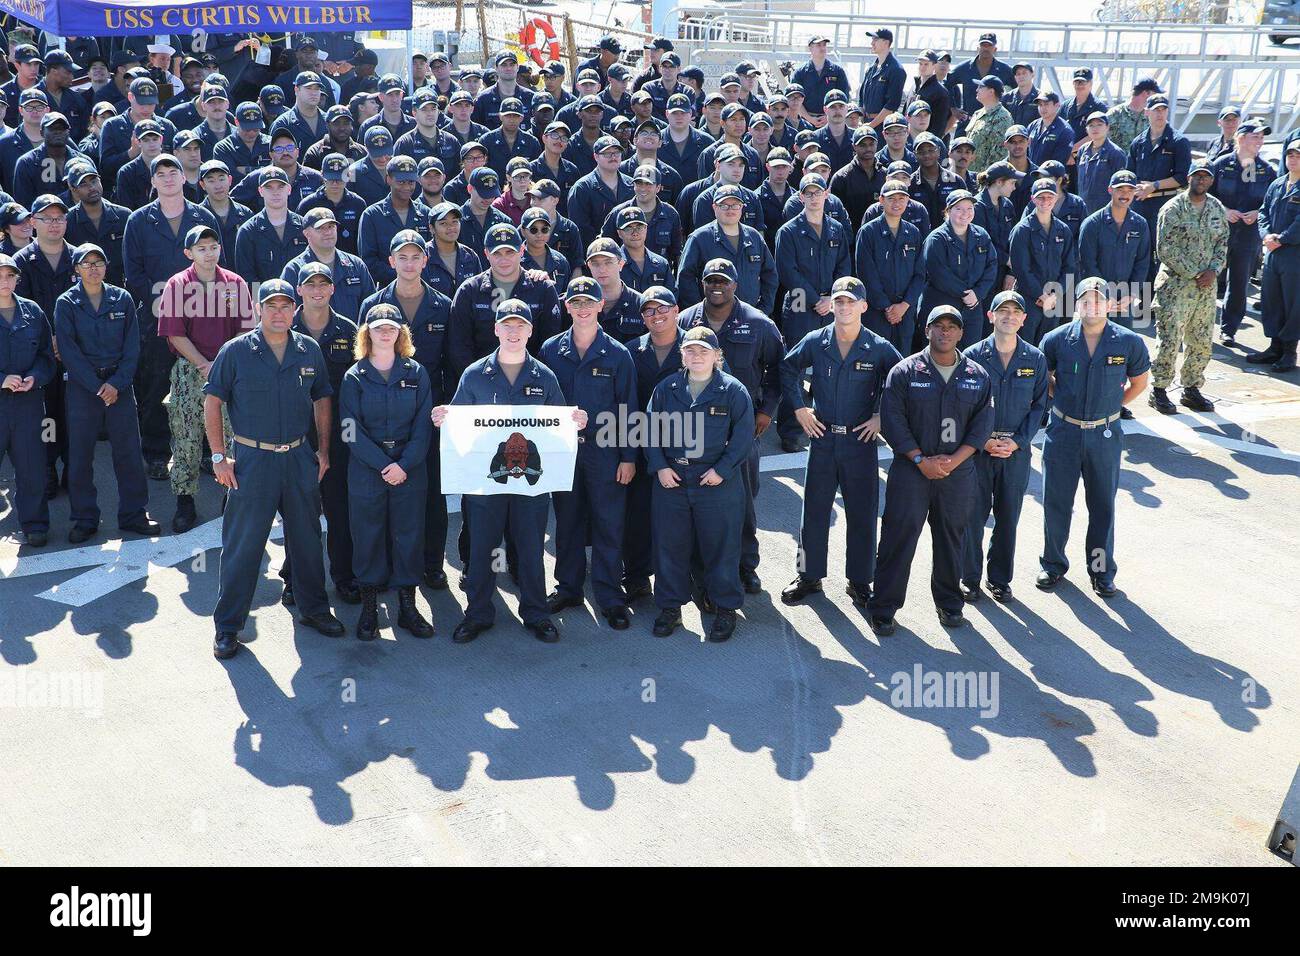 SAN DIEGO, CA (19 mai 2022) - l'équipage de l'USS Curtis Wilbur (DDG 54) reçoit le prix Bloodrier pour l'excellence de la guerre anti-surface (ASW) pour l'année 2021, il s'agit de leur troisième prix depuis six ans. Banque D'Images